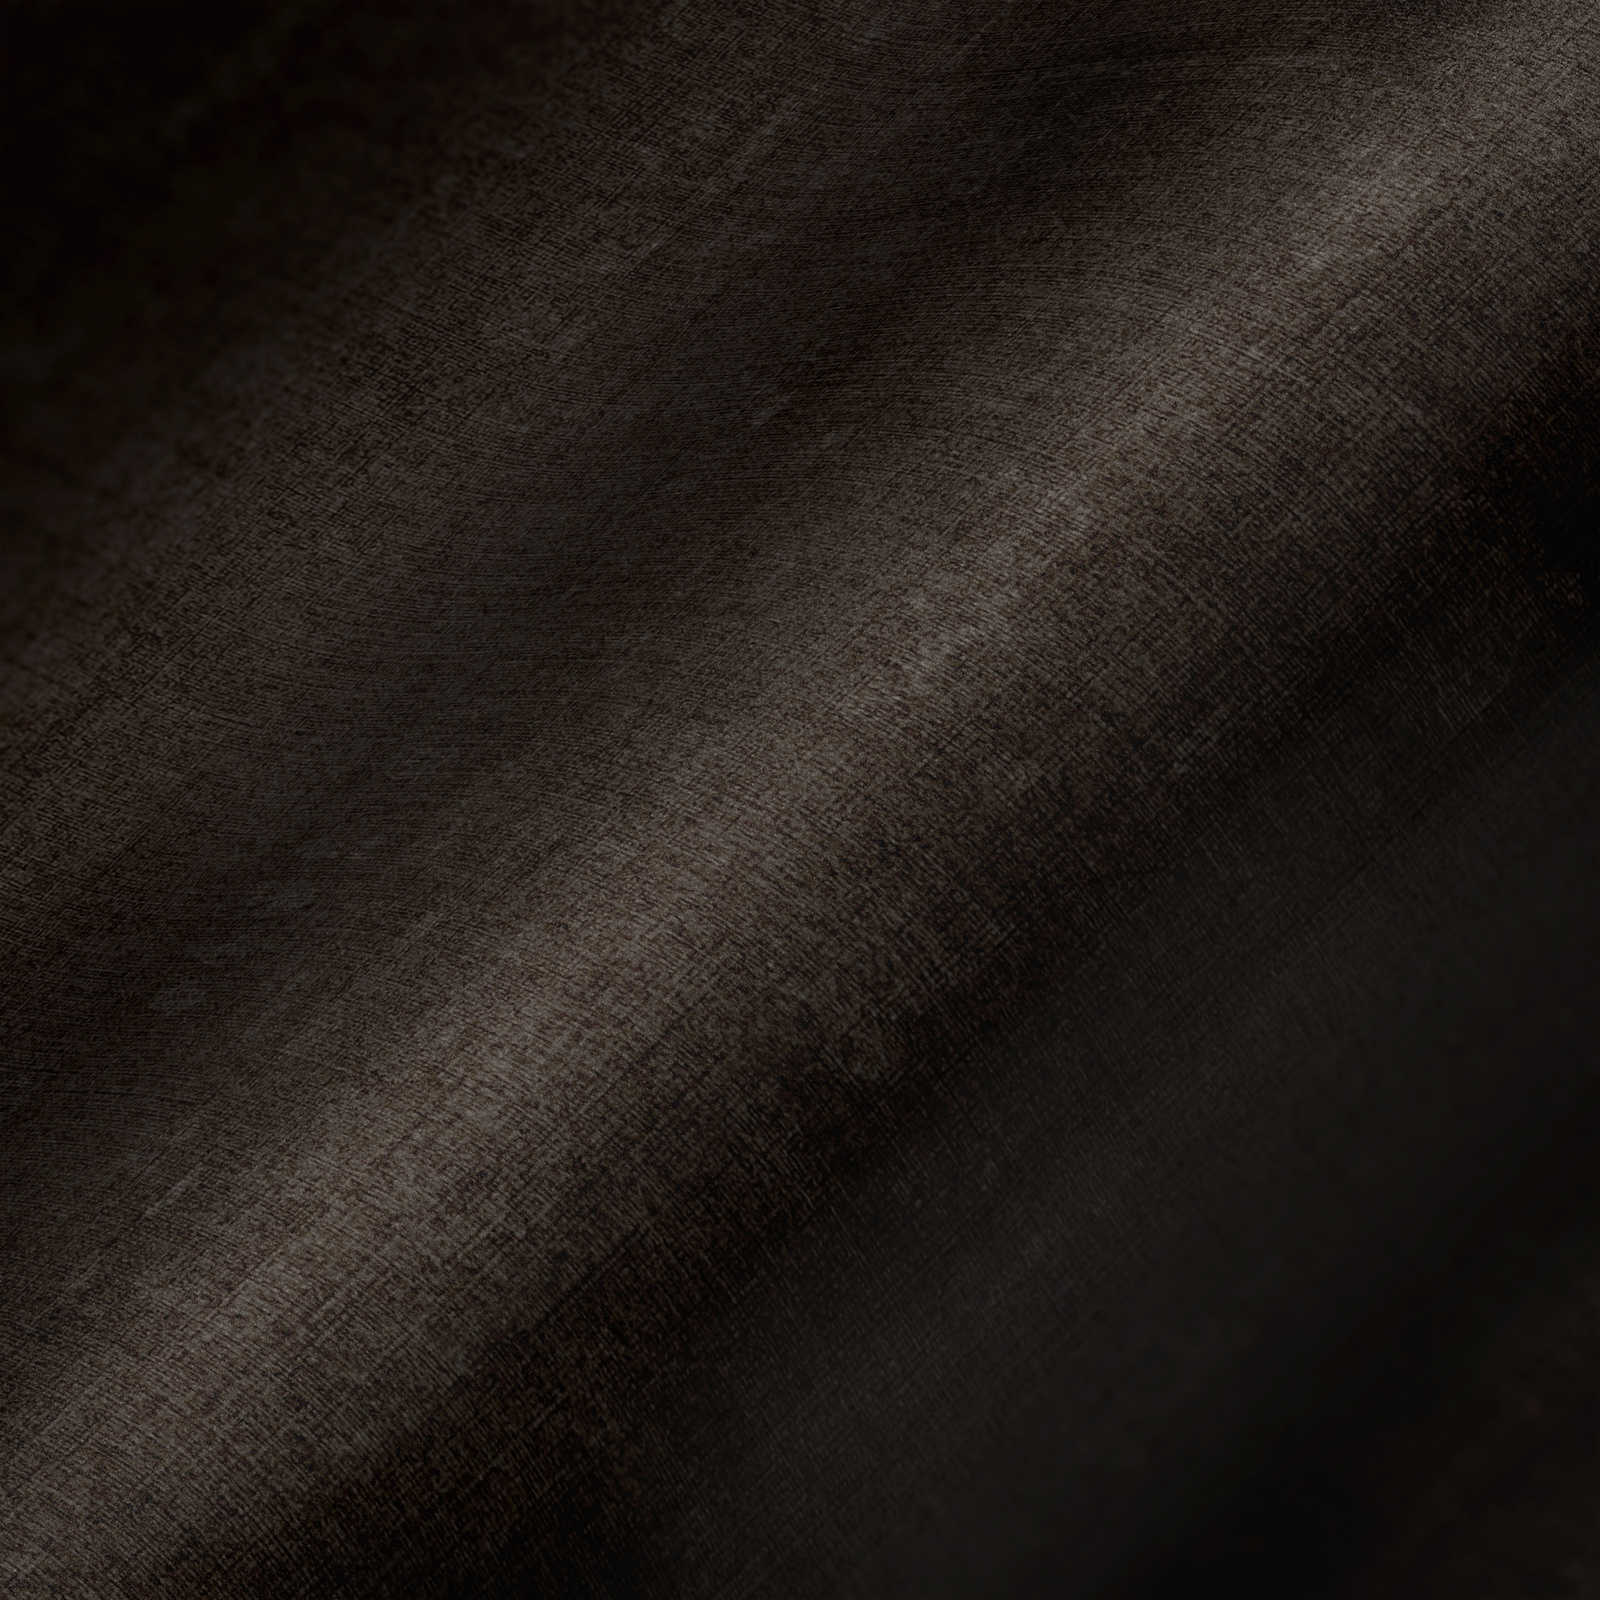             papier peint chiné uni avec dessin structuré - gris, noir
        